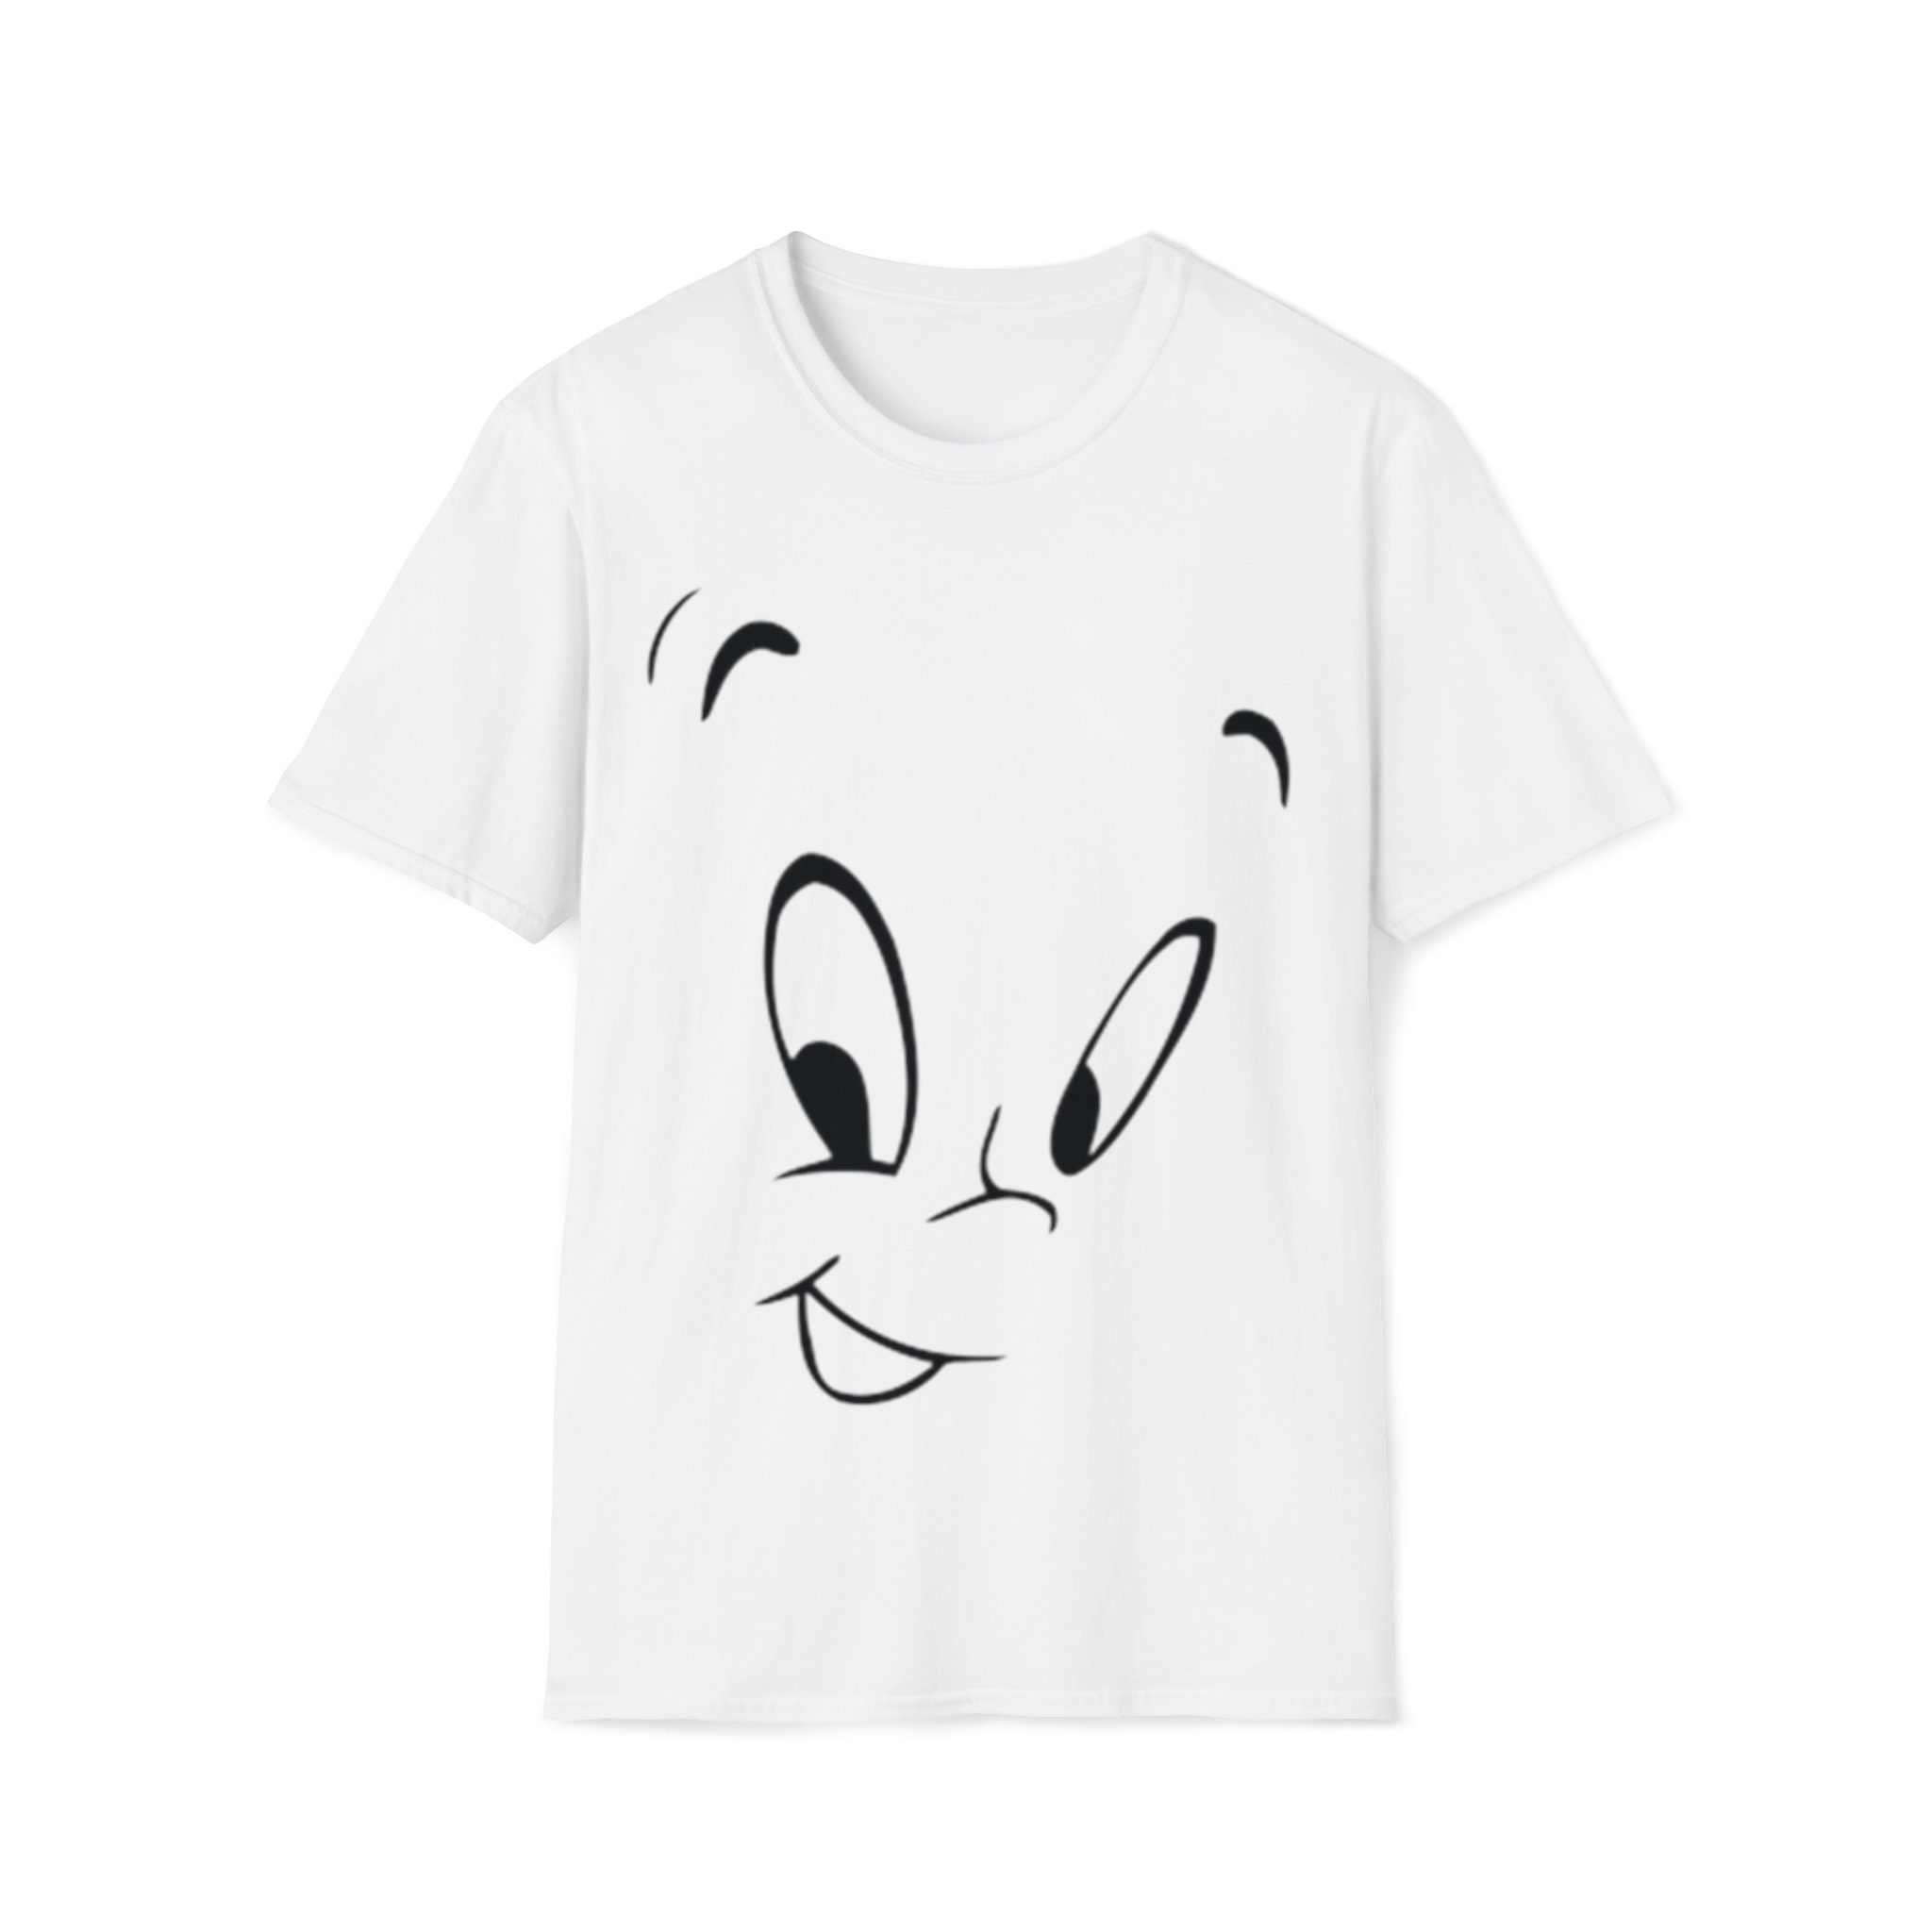 Casper T Shirt 